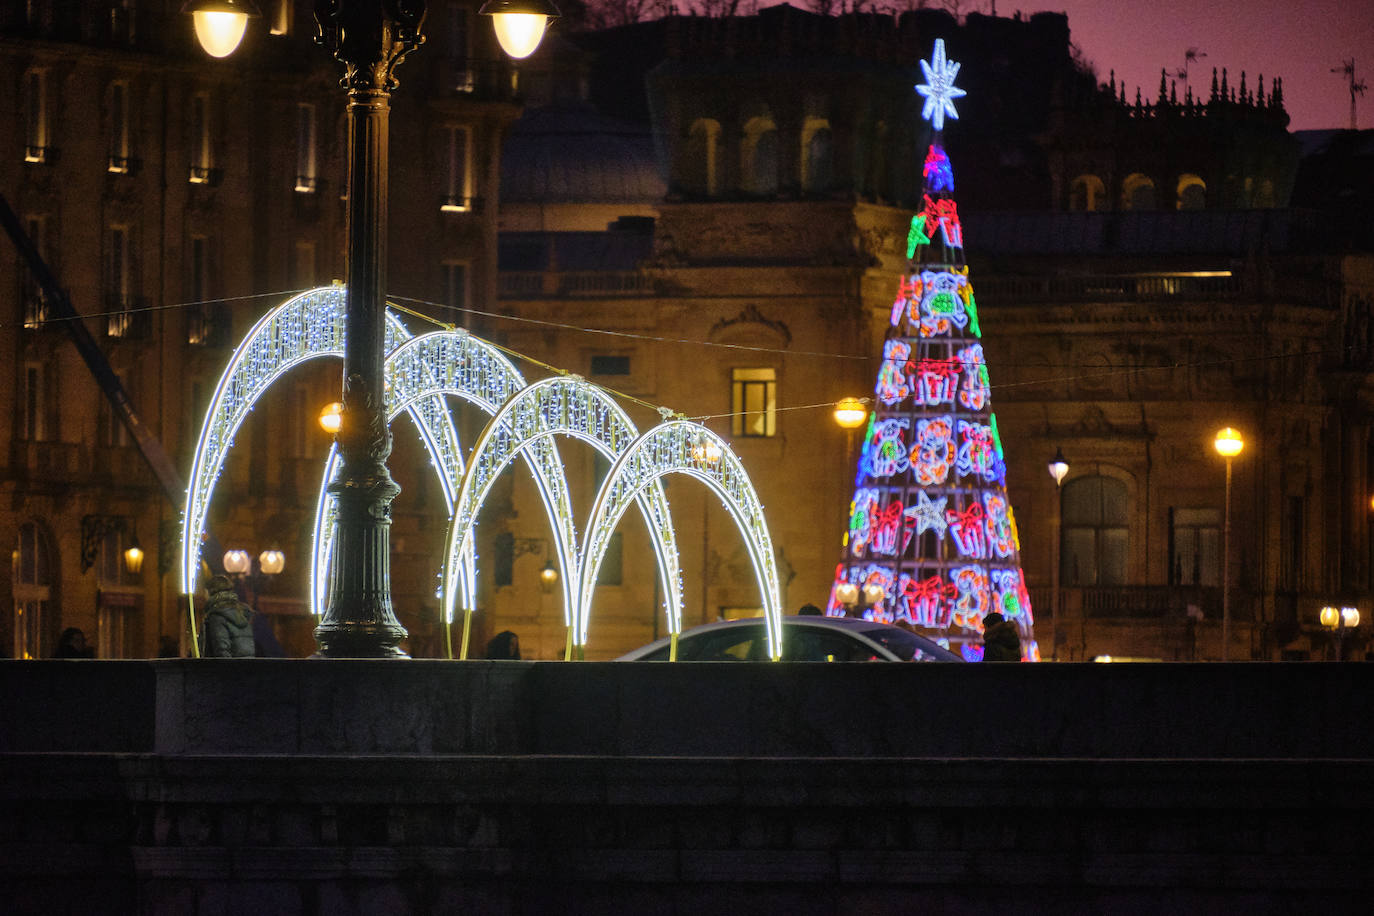 Las luces de Navidad iluminan Donostia. Por toda la ciudada hay 75 calles con más de 730 elementos, de ellos un 90% de diseños nuevos. Además, en Alderdi Eder se ha instalado un planetario de luz y sonido, una bola de diez metros de altura en la calle Easo, los árboles del Buen Pastor y el palacio de Miramar y el Mercado de Navidad. Todo ellos contribuyen a dar brillo a la ciudad.